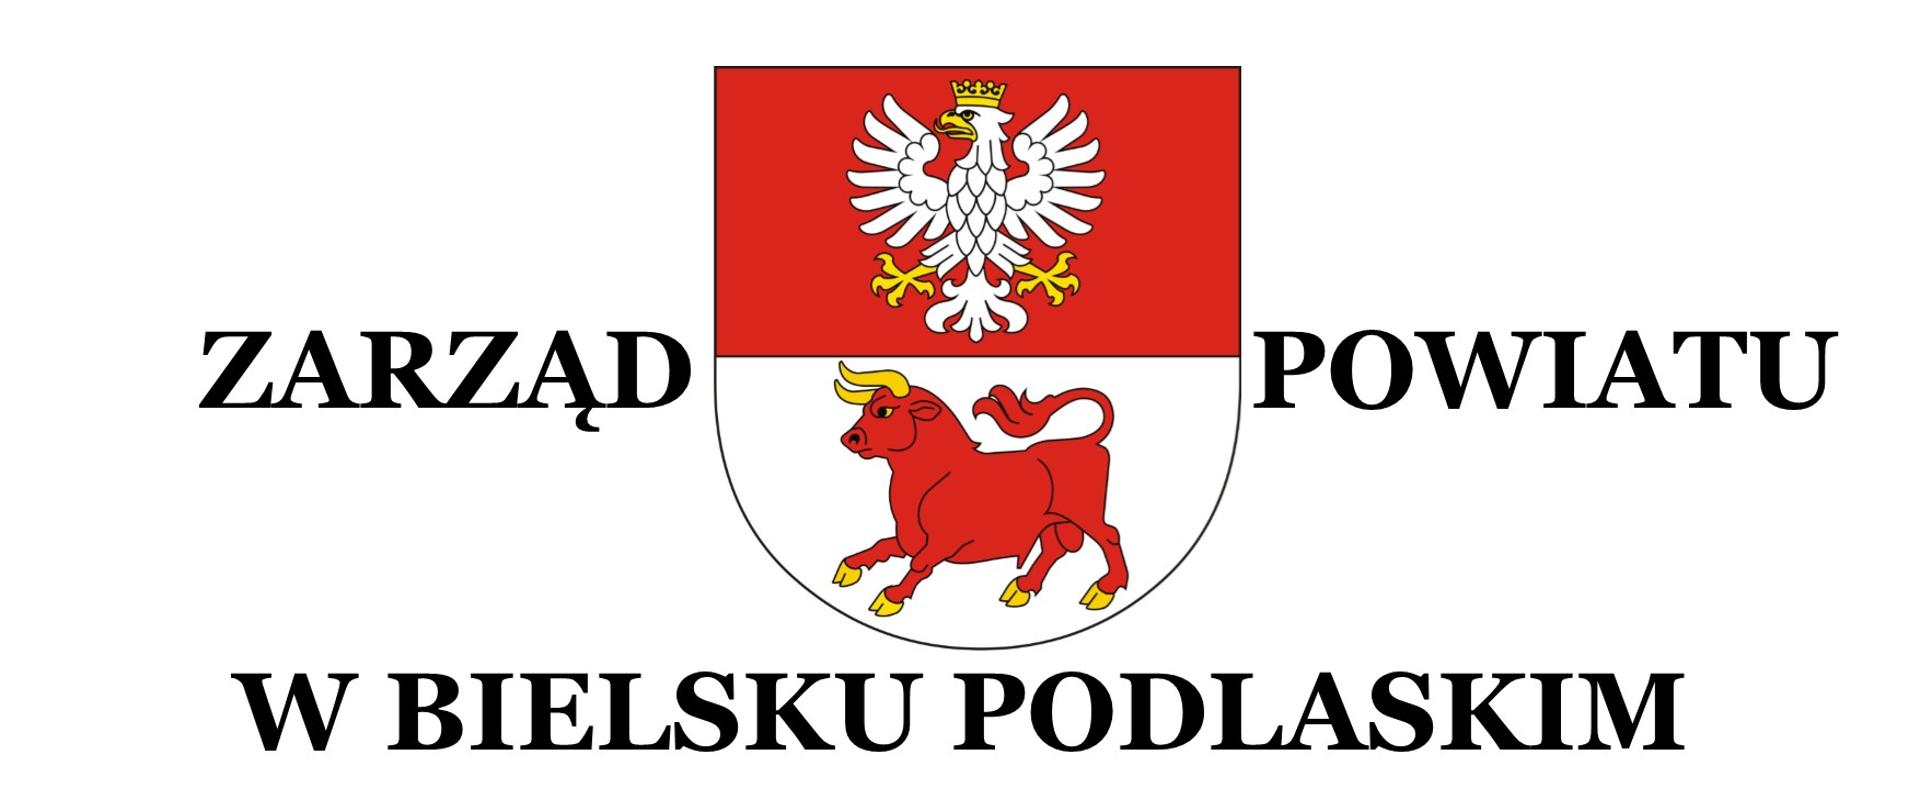 Zarząd Powiatu w Bielsku Podlaskim - ilustracja